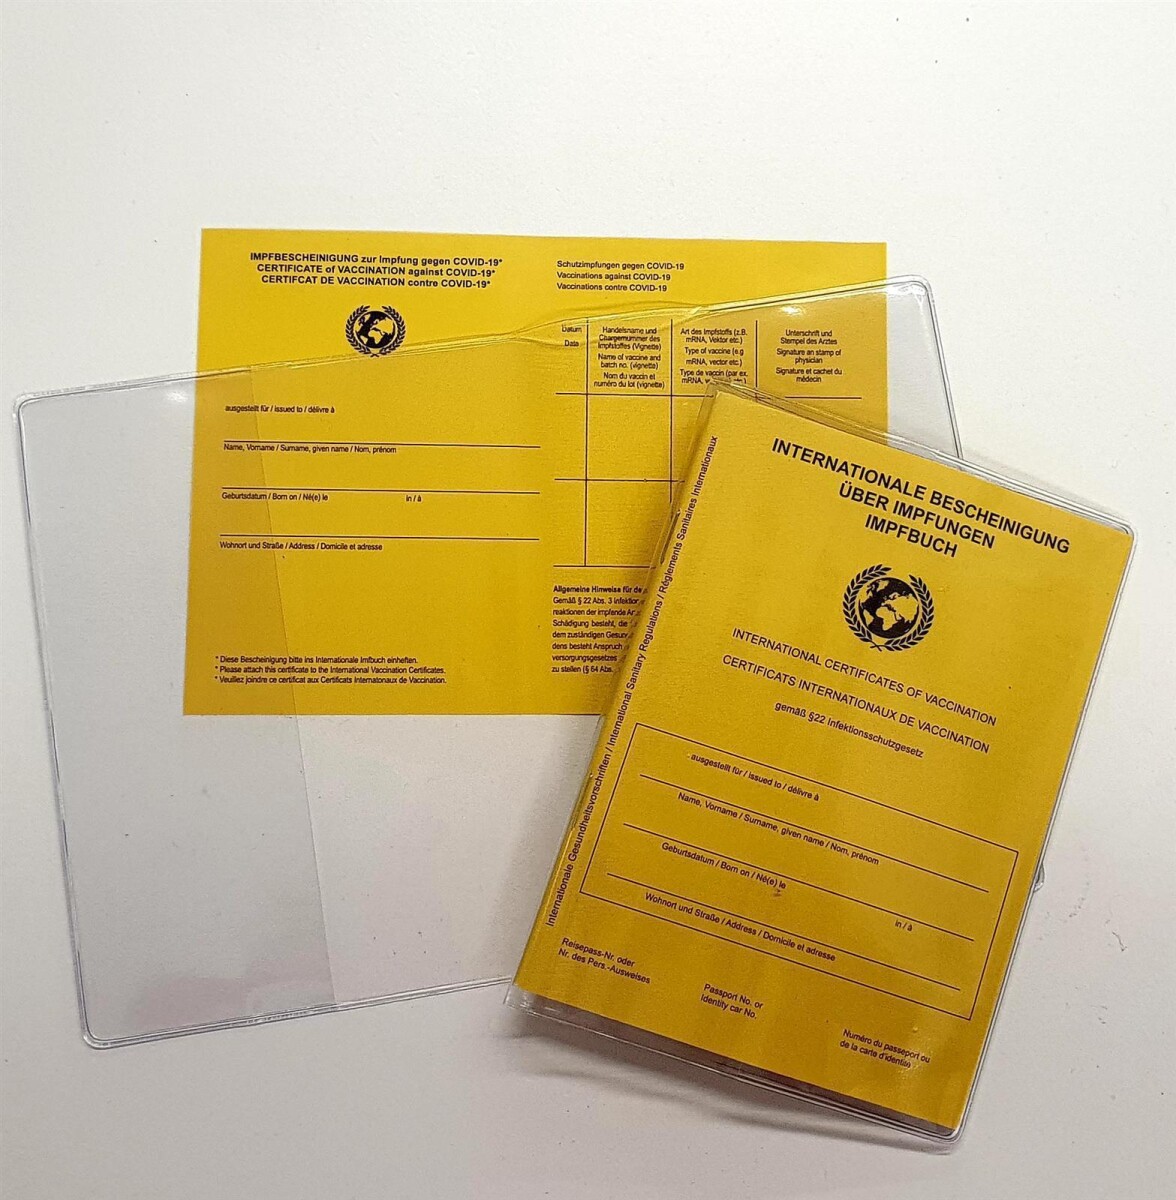 93 mm x 130 mm - glasklar & doppelseitig mit Einstecklaschen 2er Pack Internationale Impfbescheinigung für Kinder & Erwachsene Impfpasshülle Made IN Germany Schutzhülle für neuen Impfpass 